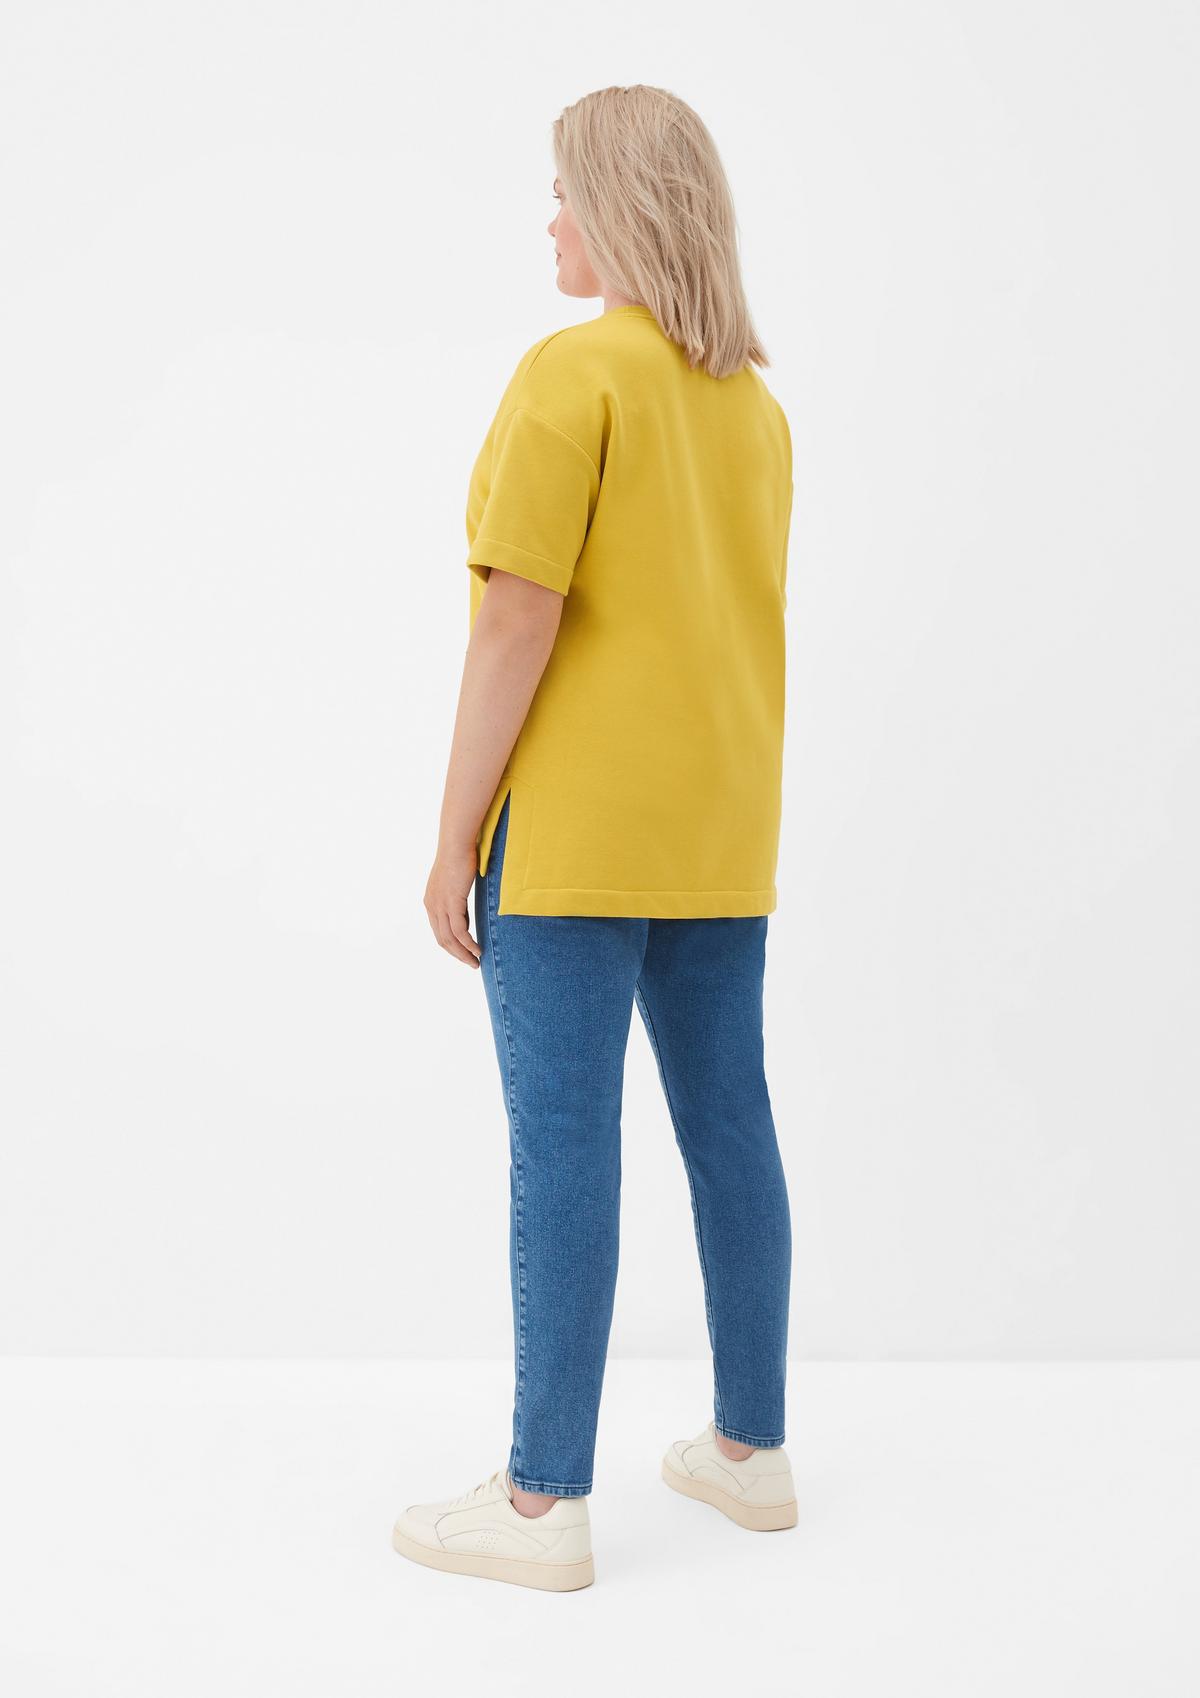 Ärmeln Sweatshirt kurzen - mit gelb